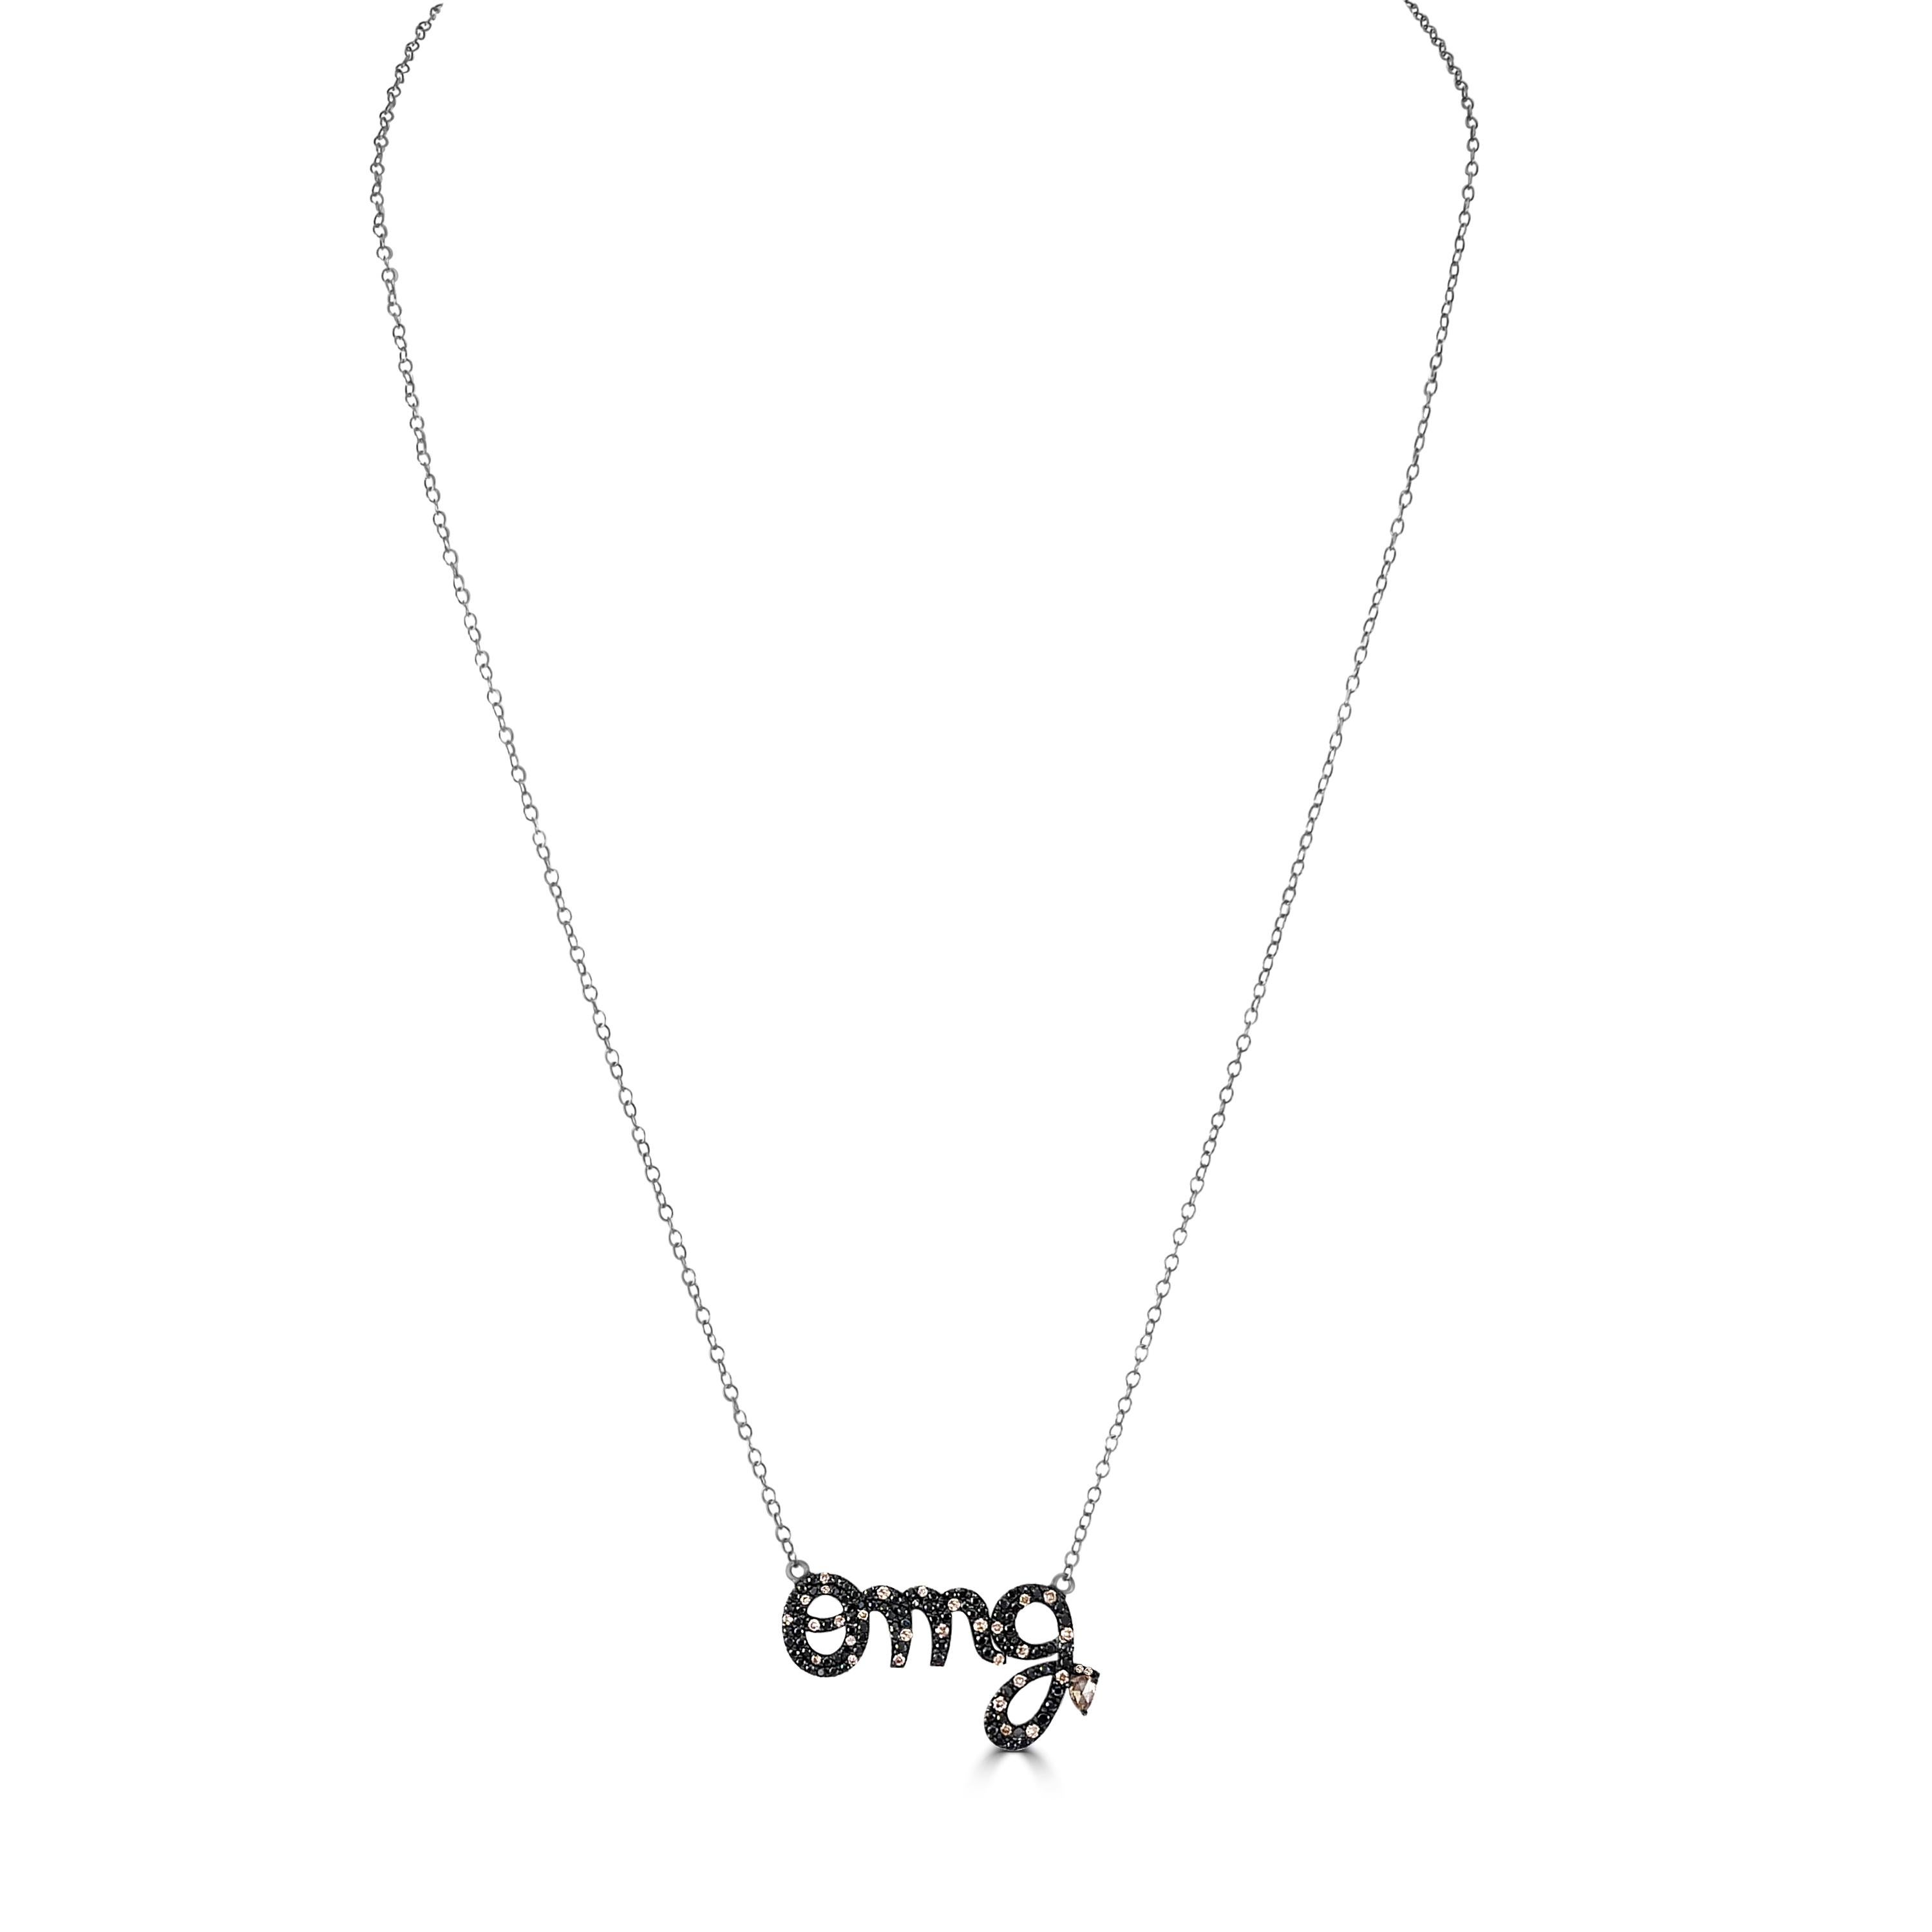 Wir präsentieren unseren viktorianischen 0.76 Cttw. Die OMG-Anhänger-Halskette mit schwarzem Spinell und Diamanten ist ein atemberaubender Ausdruck moderner Eleganz und Raffinesse.

Diese mit viel Liebe zum Detail gefertigte Halskette besteht aus